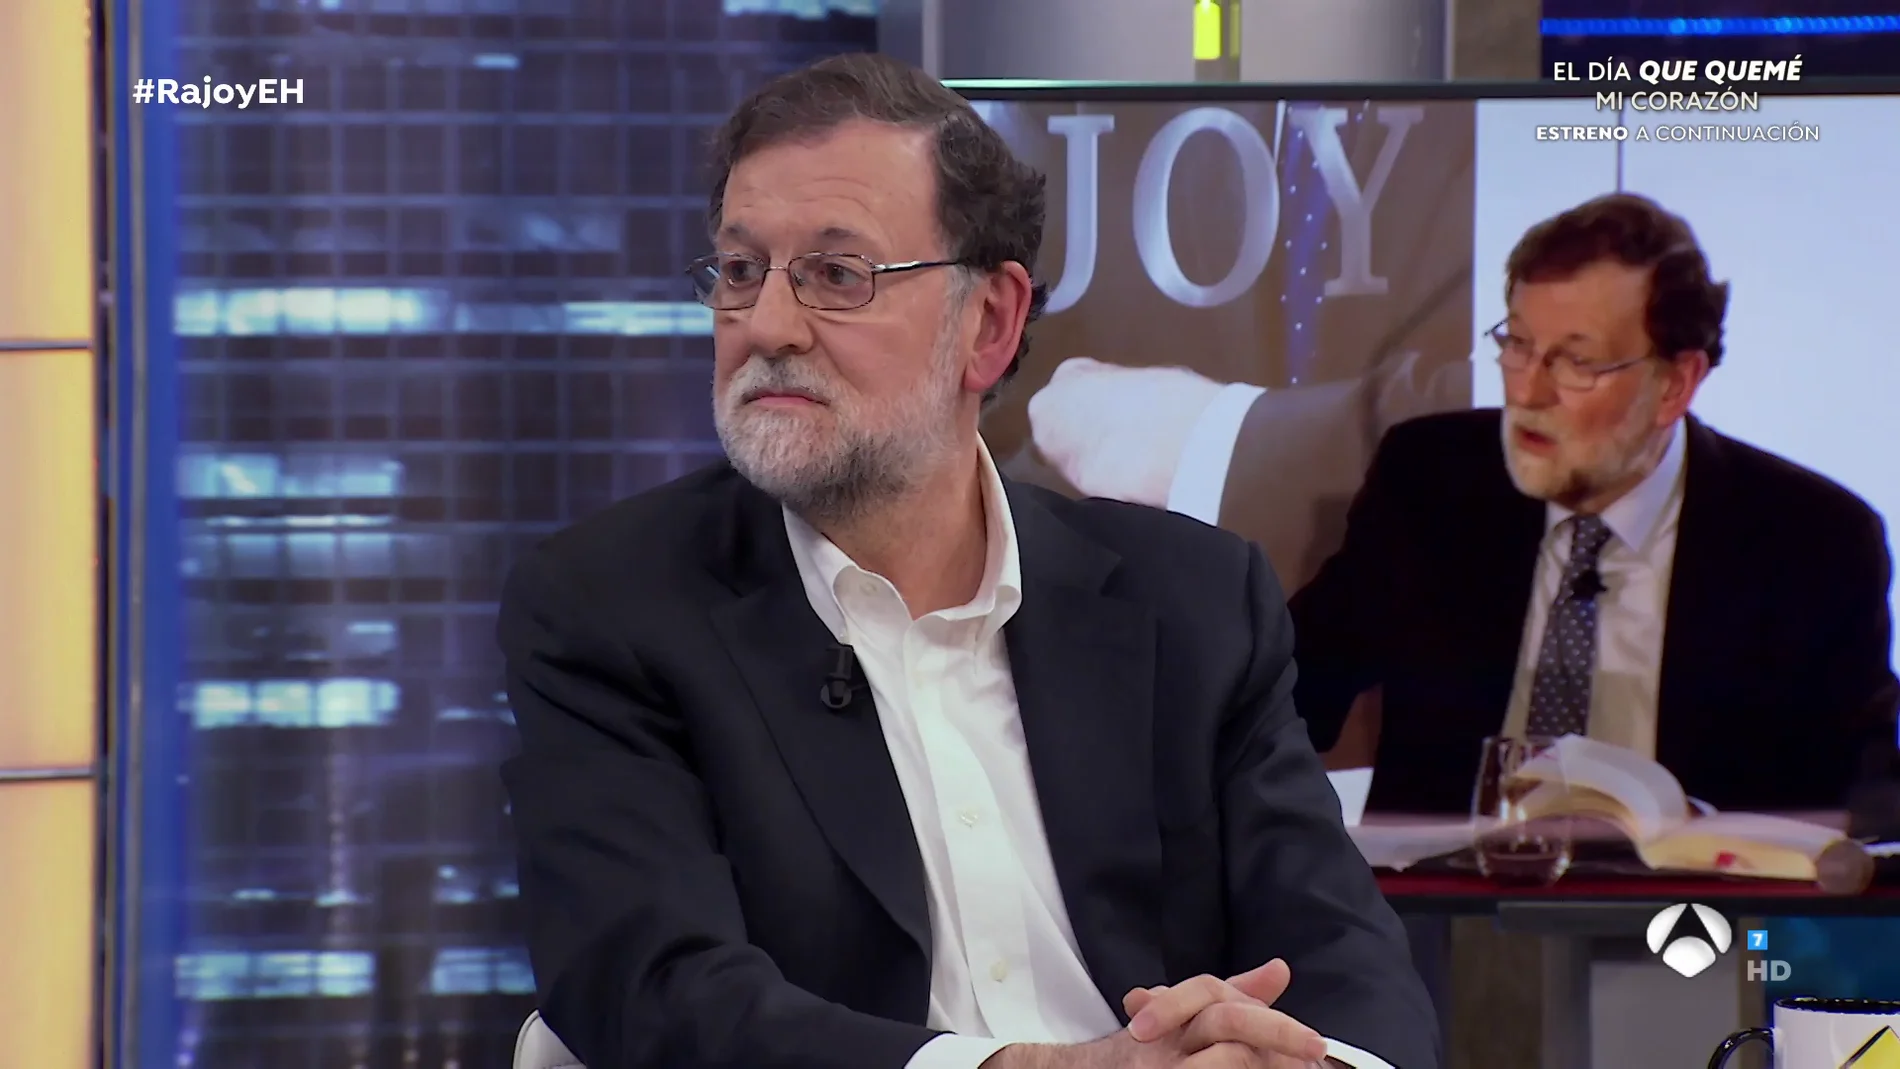 Mariano Rajoy habla sobre el lenguaje inclusivo: "No es bueno que nos quieran imponer estas cosas a estas alturas de la vida"